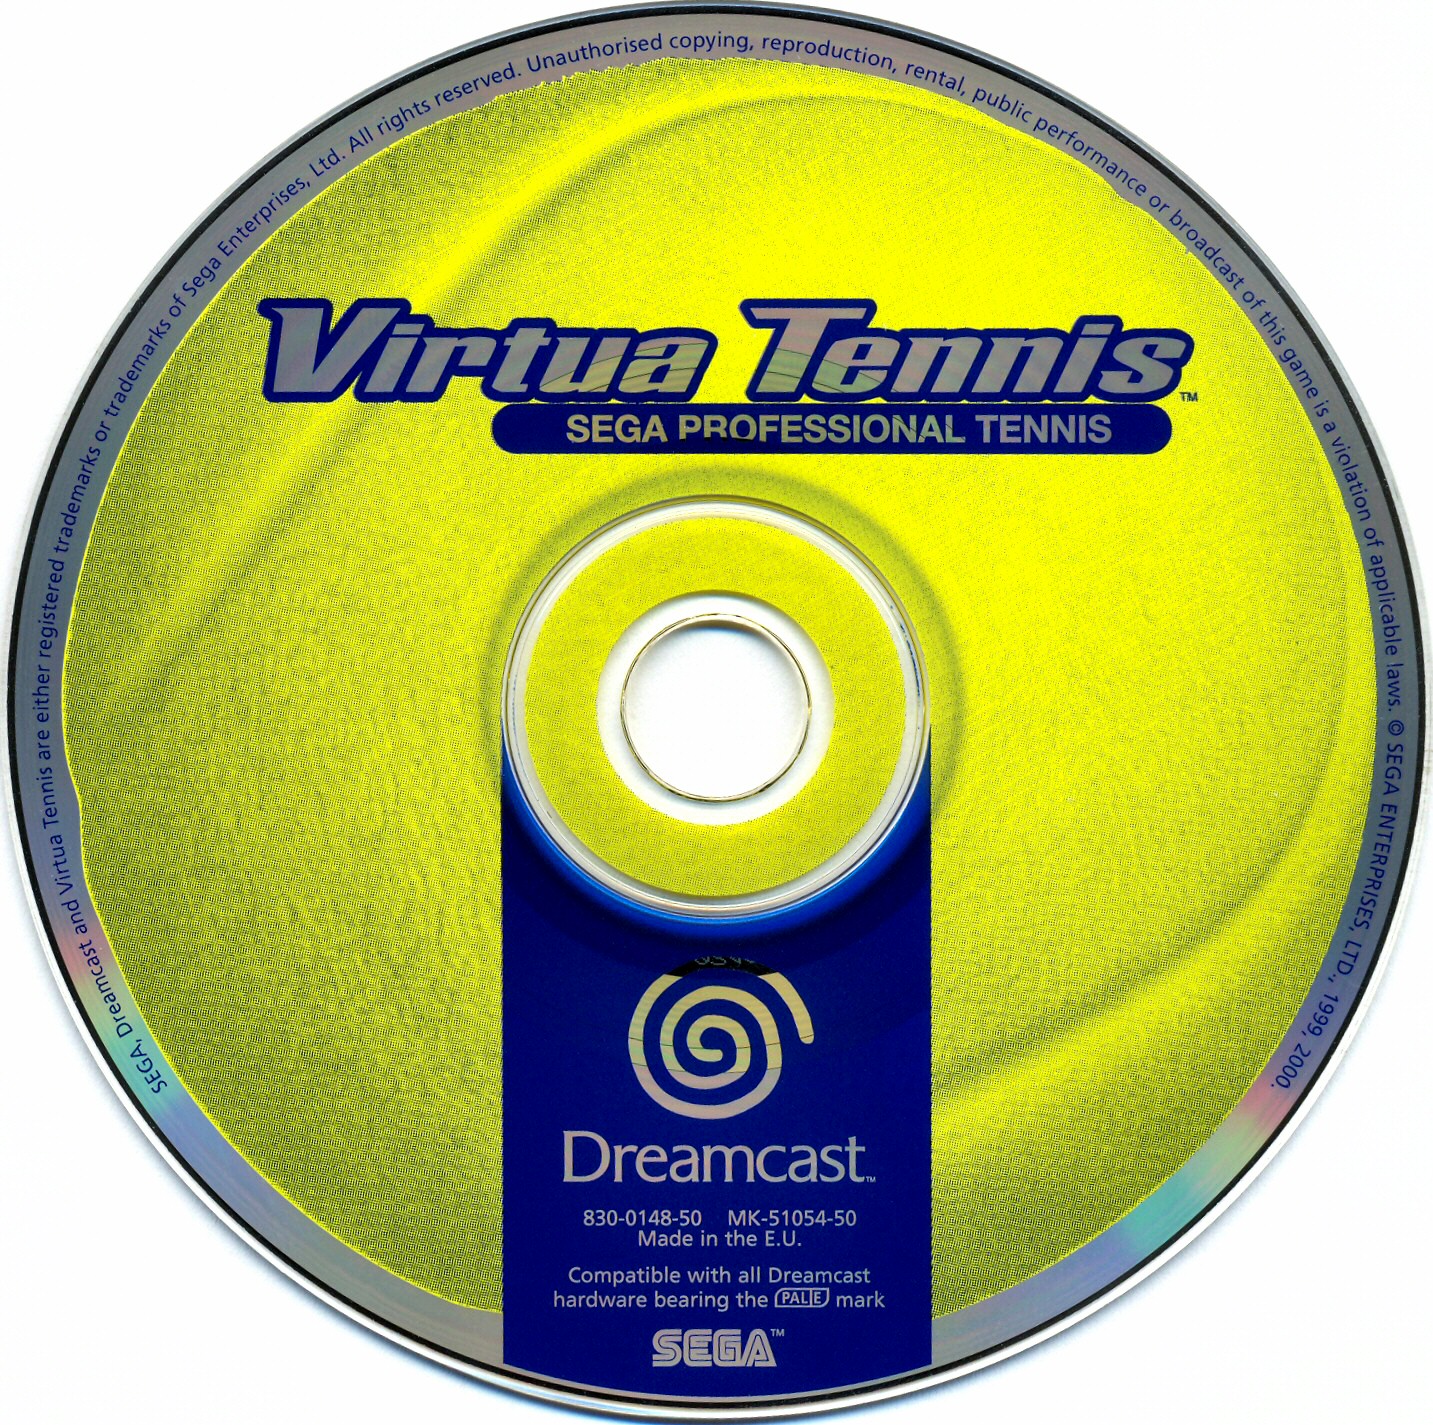 Virtua Tennis 3 Cd Crack Wolfenstein The New Order